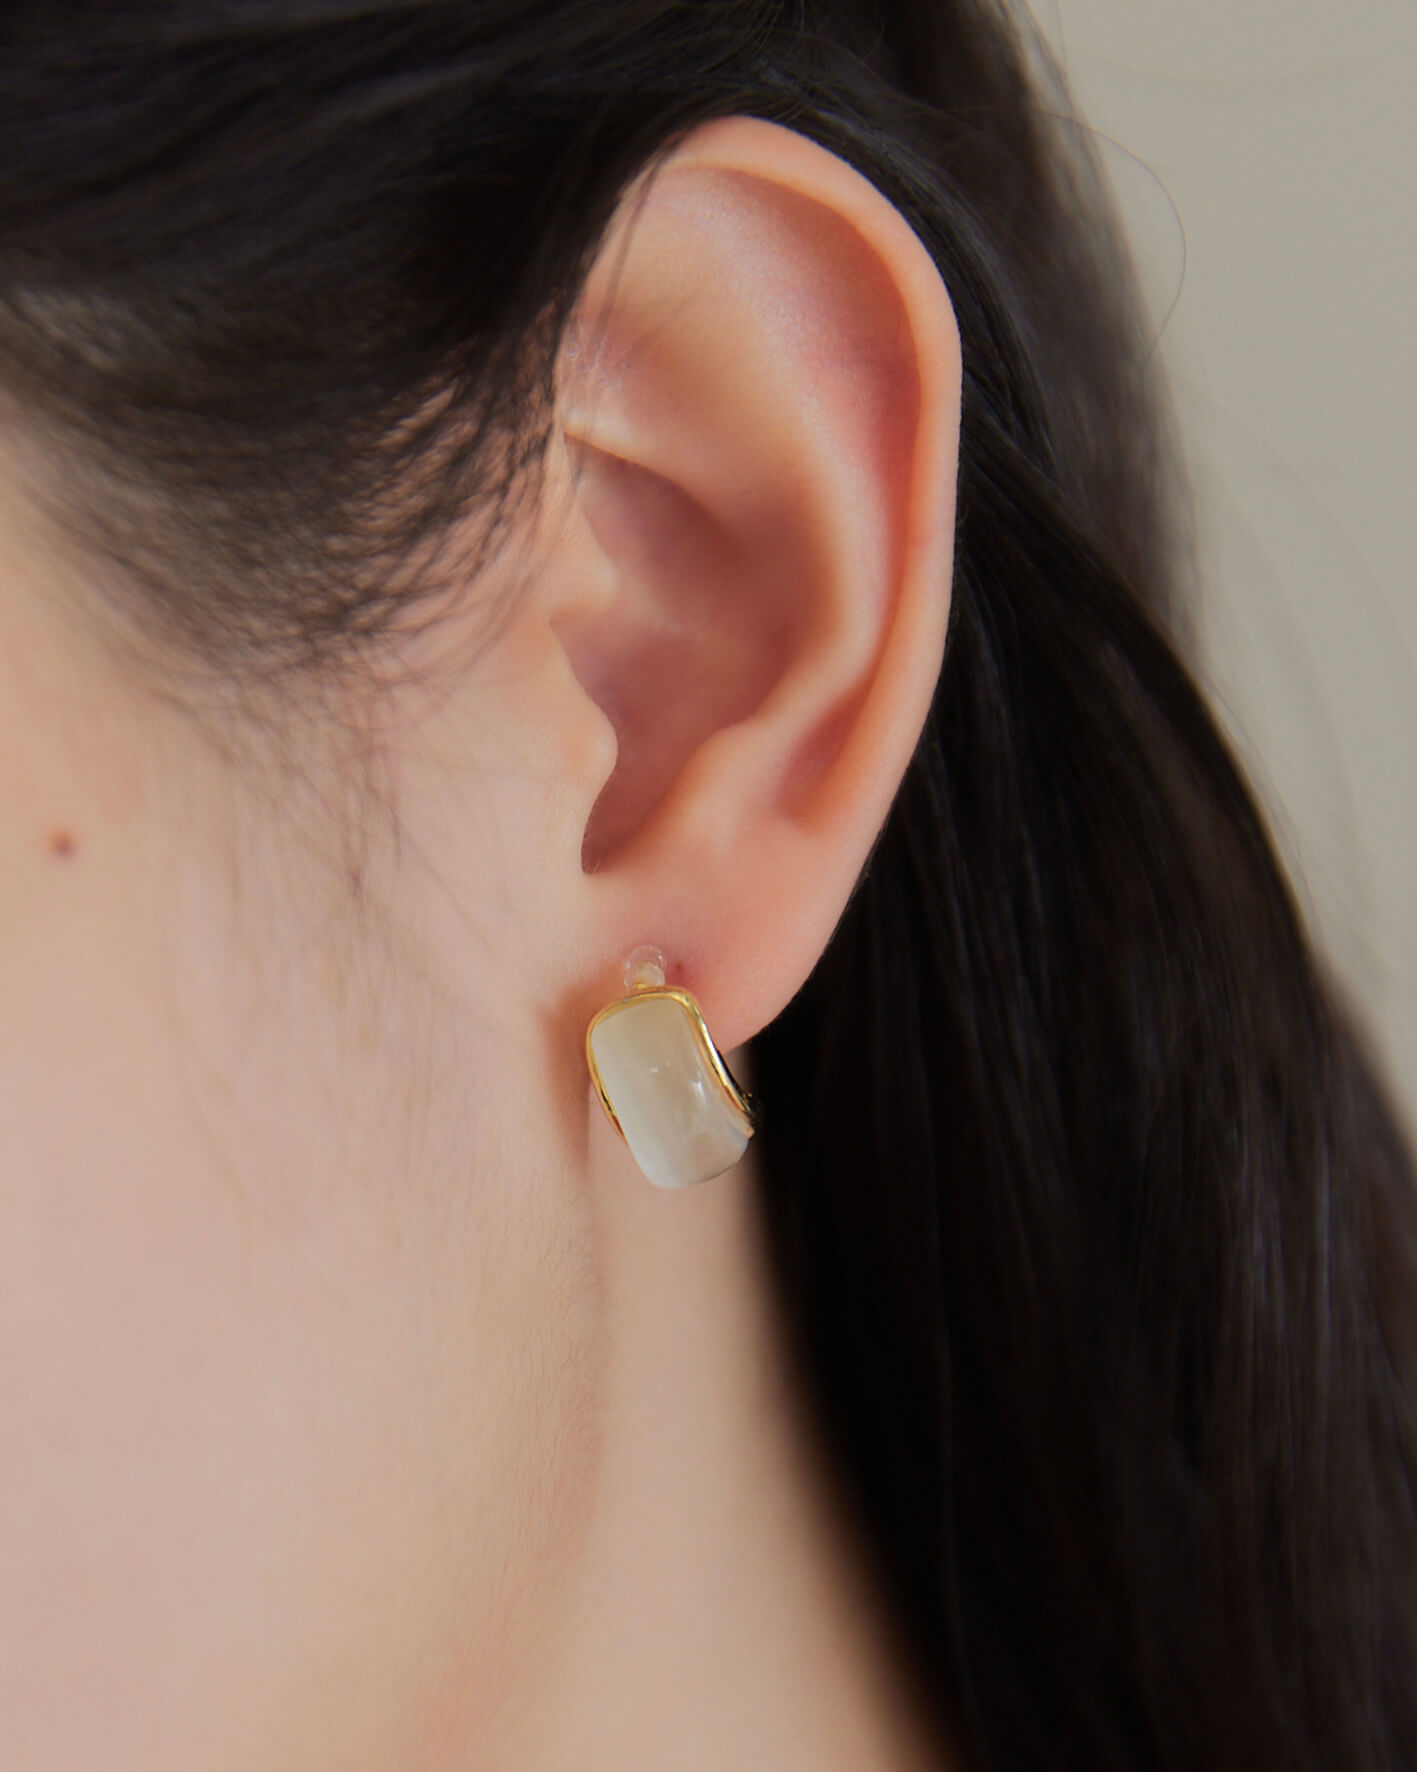 式耳環,矽膠夾耳環,透明耳夾耳環,無痛耳夾耳環,珠貝耳環